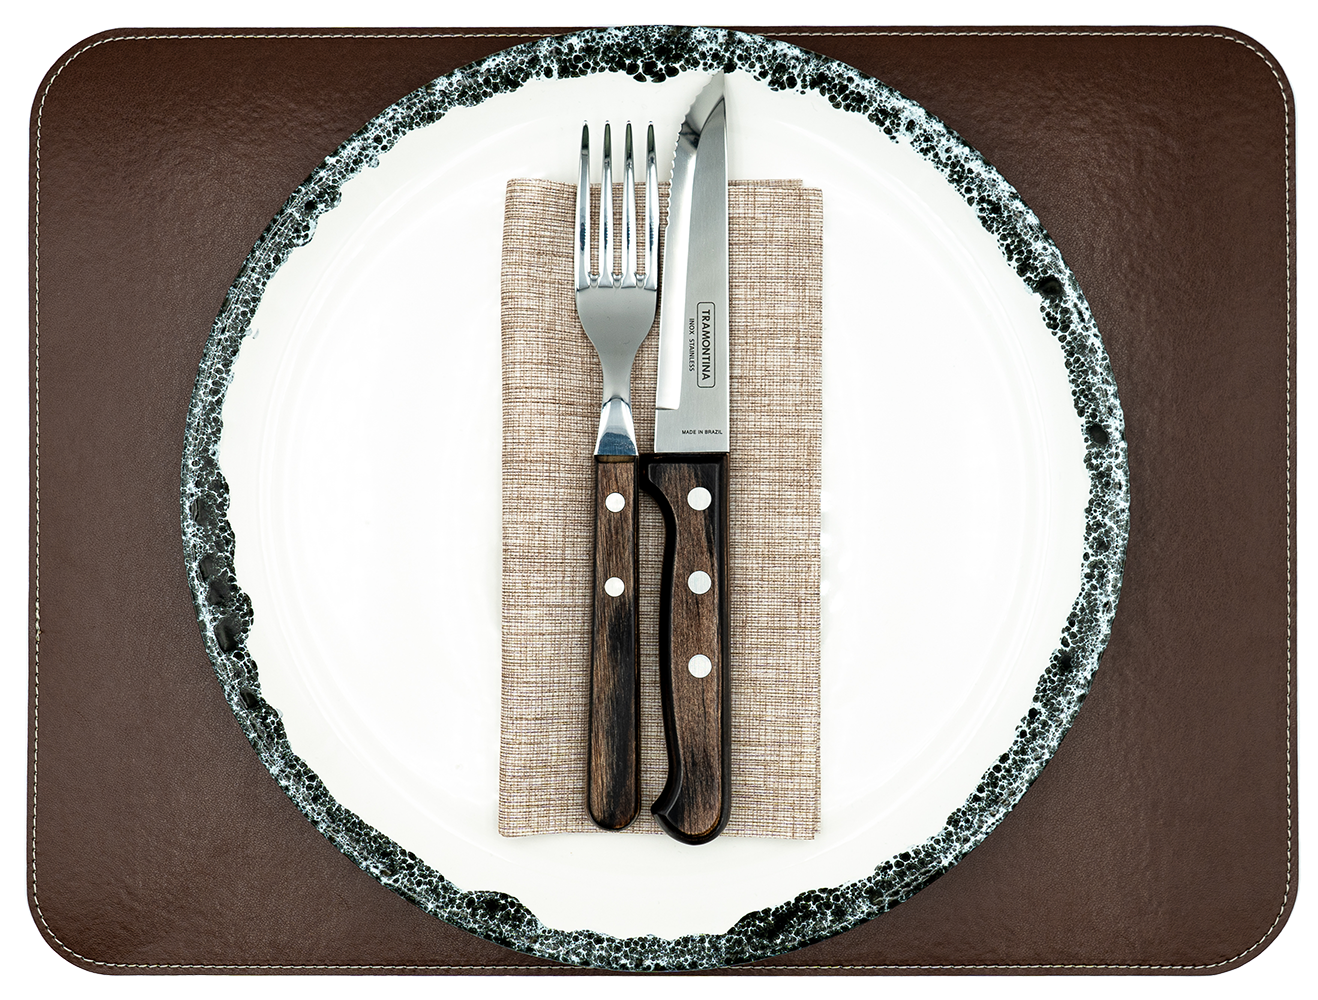 1 Tischset aus veganem PU Kunstleder - doppelseitig - 40 x 30 cm - Nutriabraun / Kastanie